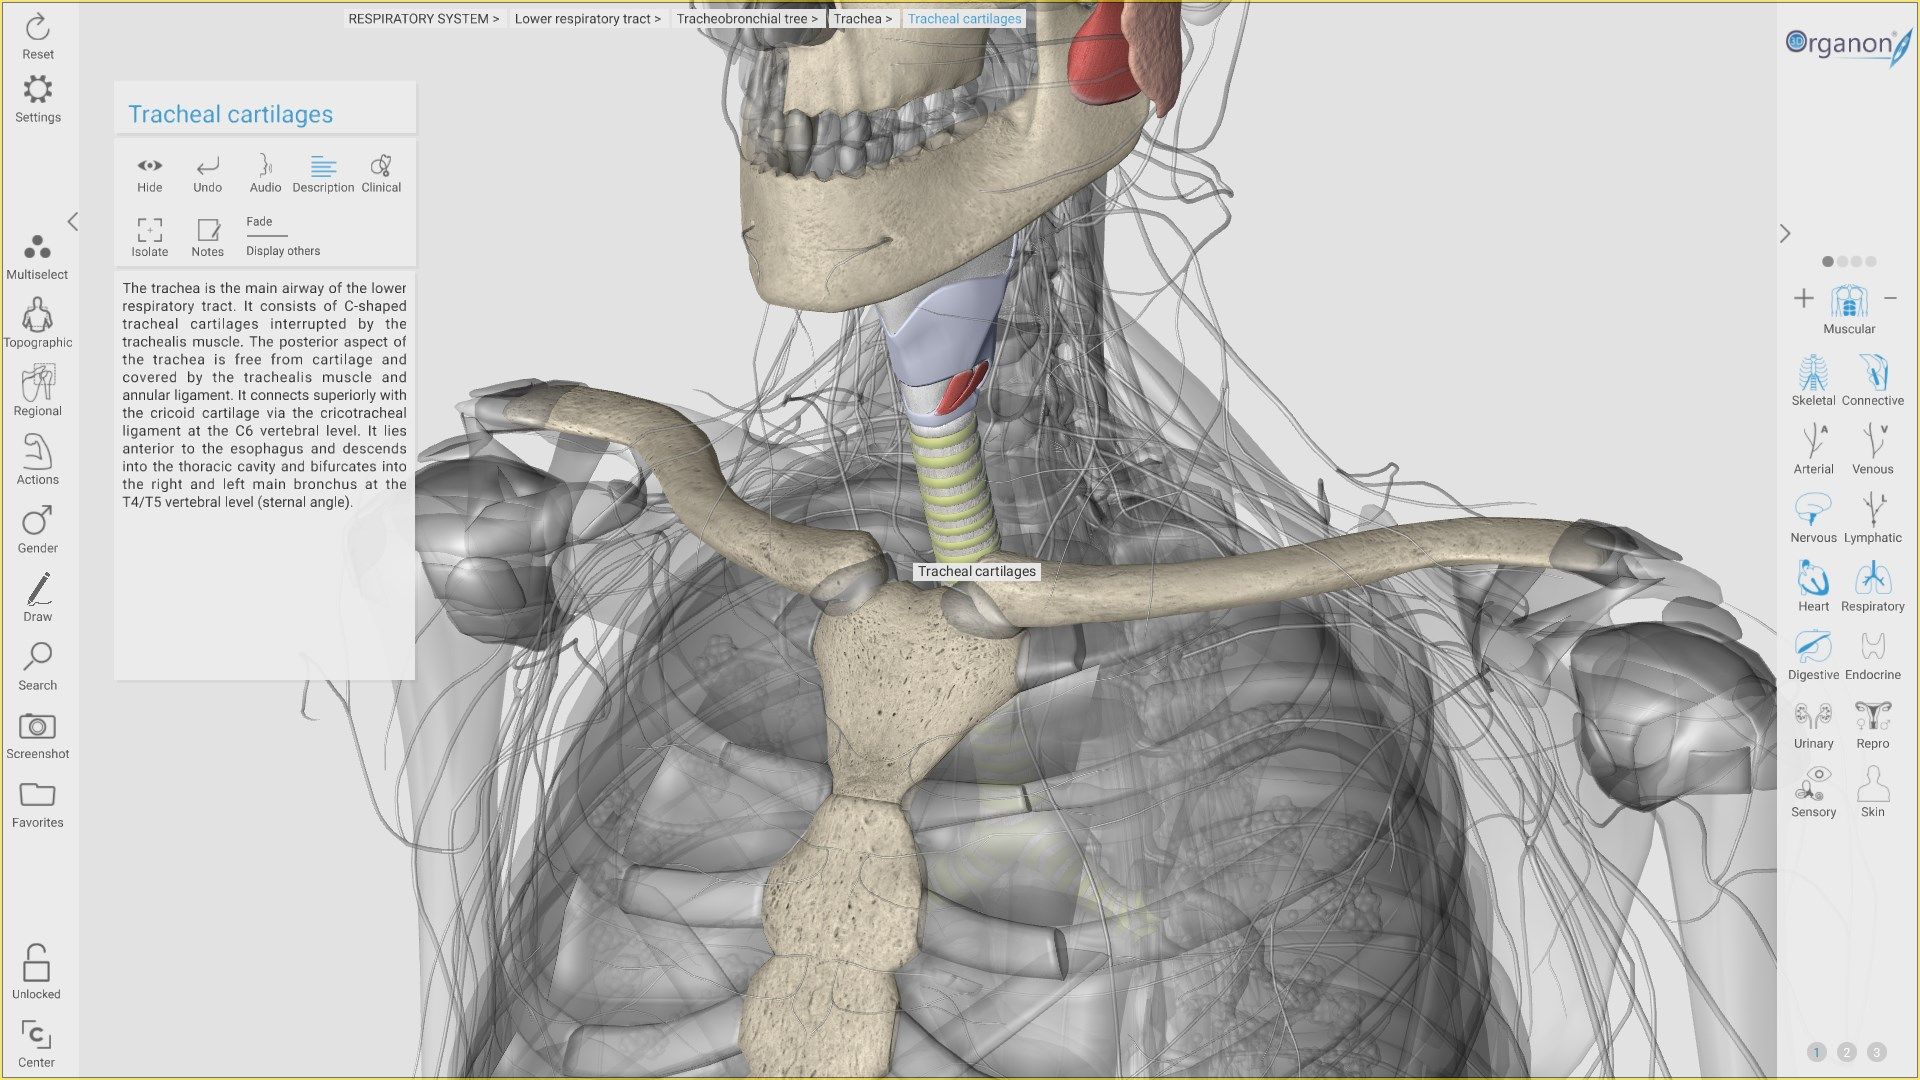 3D Organon Anatomy